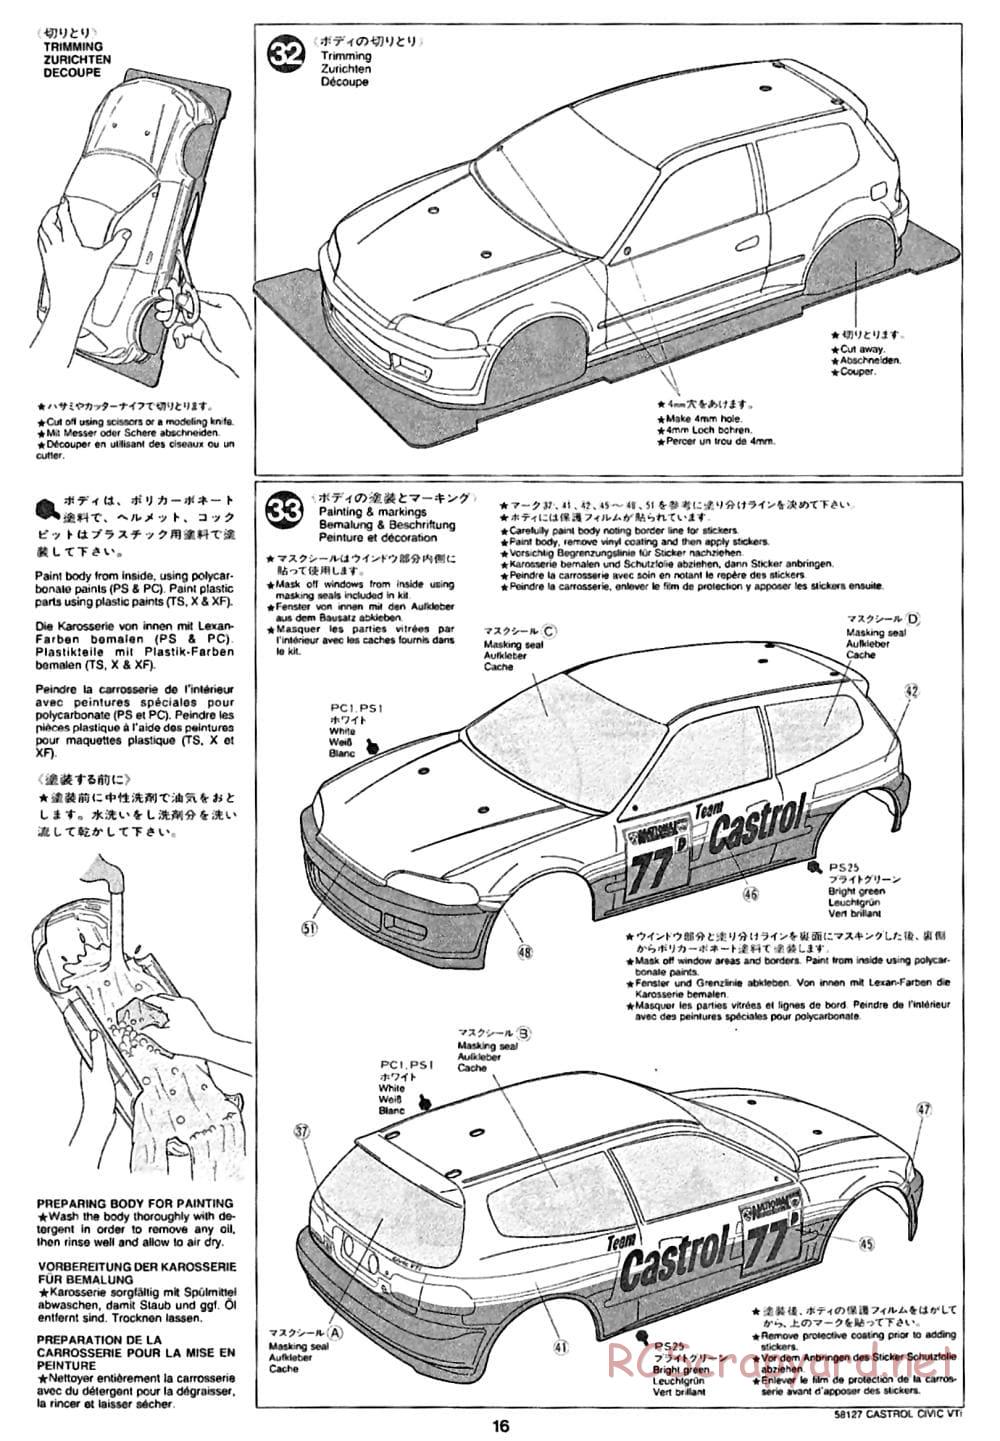 Tamiya - Castrol Honda Civic VTi - FF-01 Chassis - Manual - Page 16